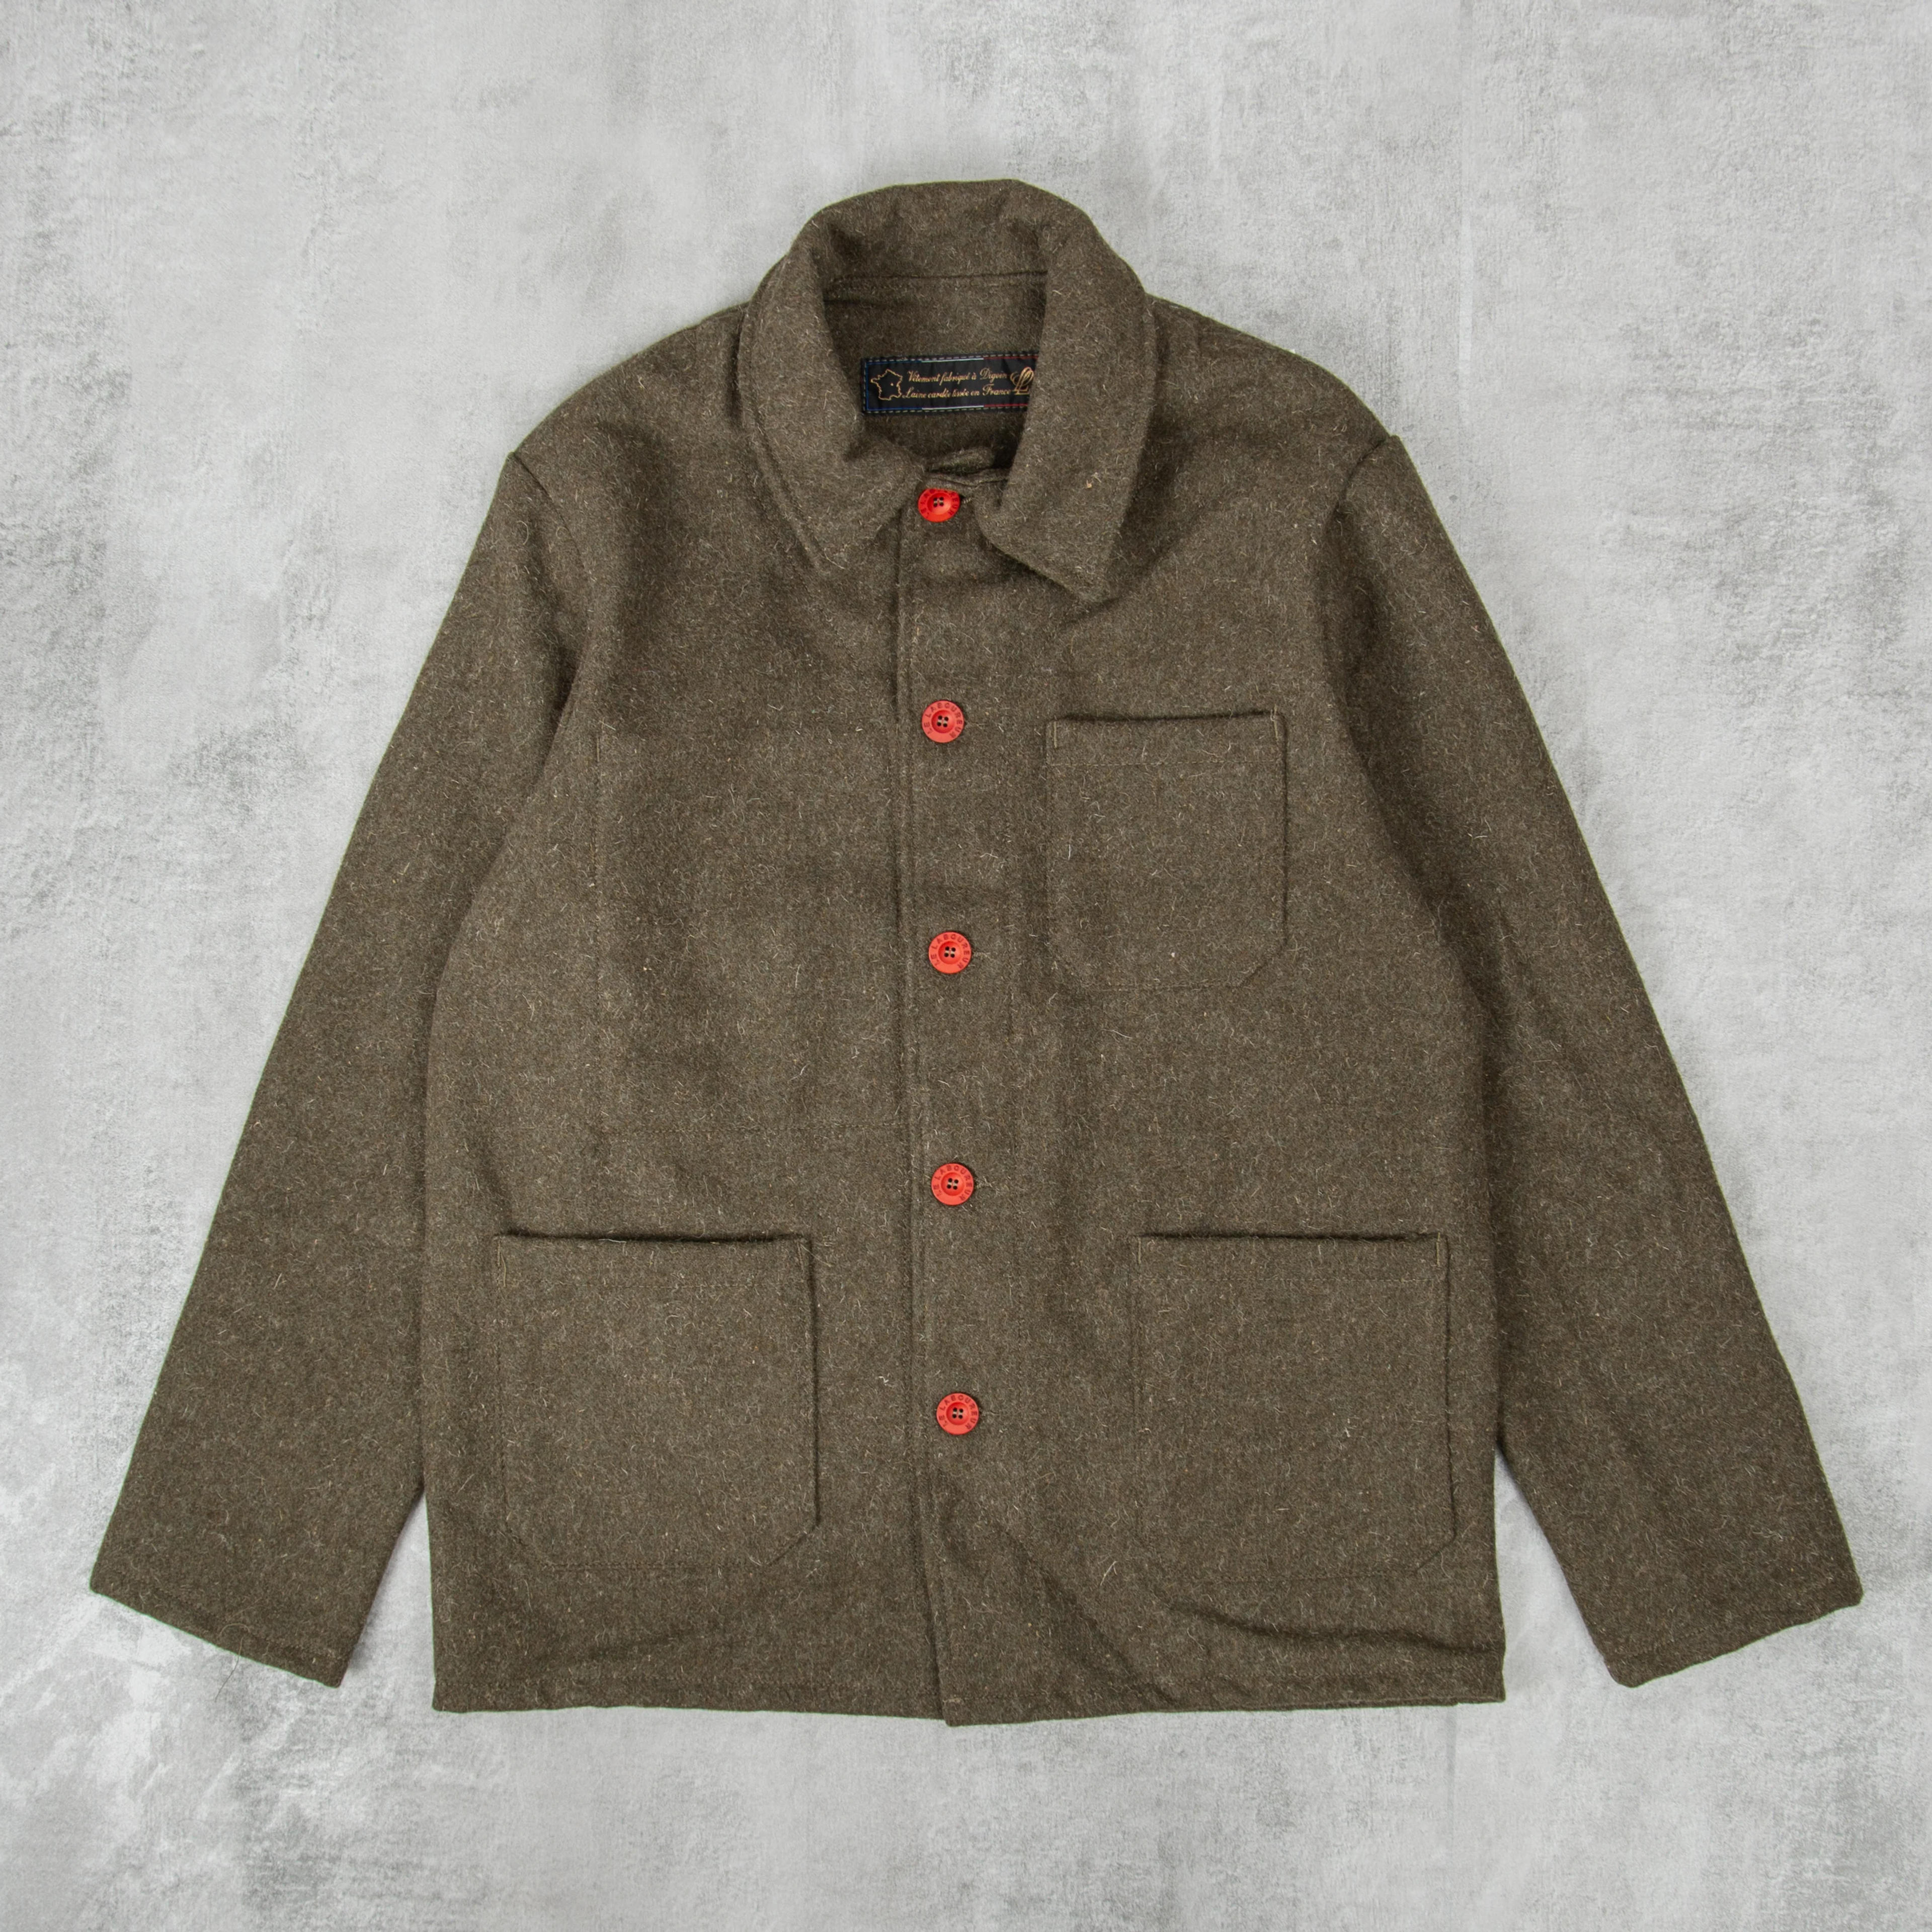 Buy the Le Laboureur Wool Work Jacket - Khaki @Union Clothing | Union Clothing